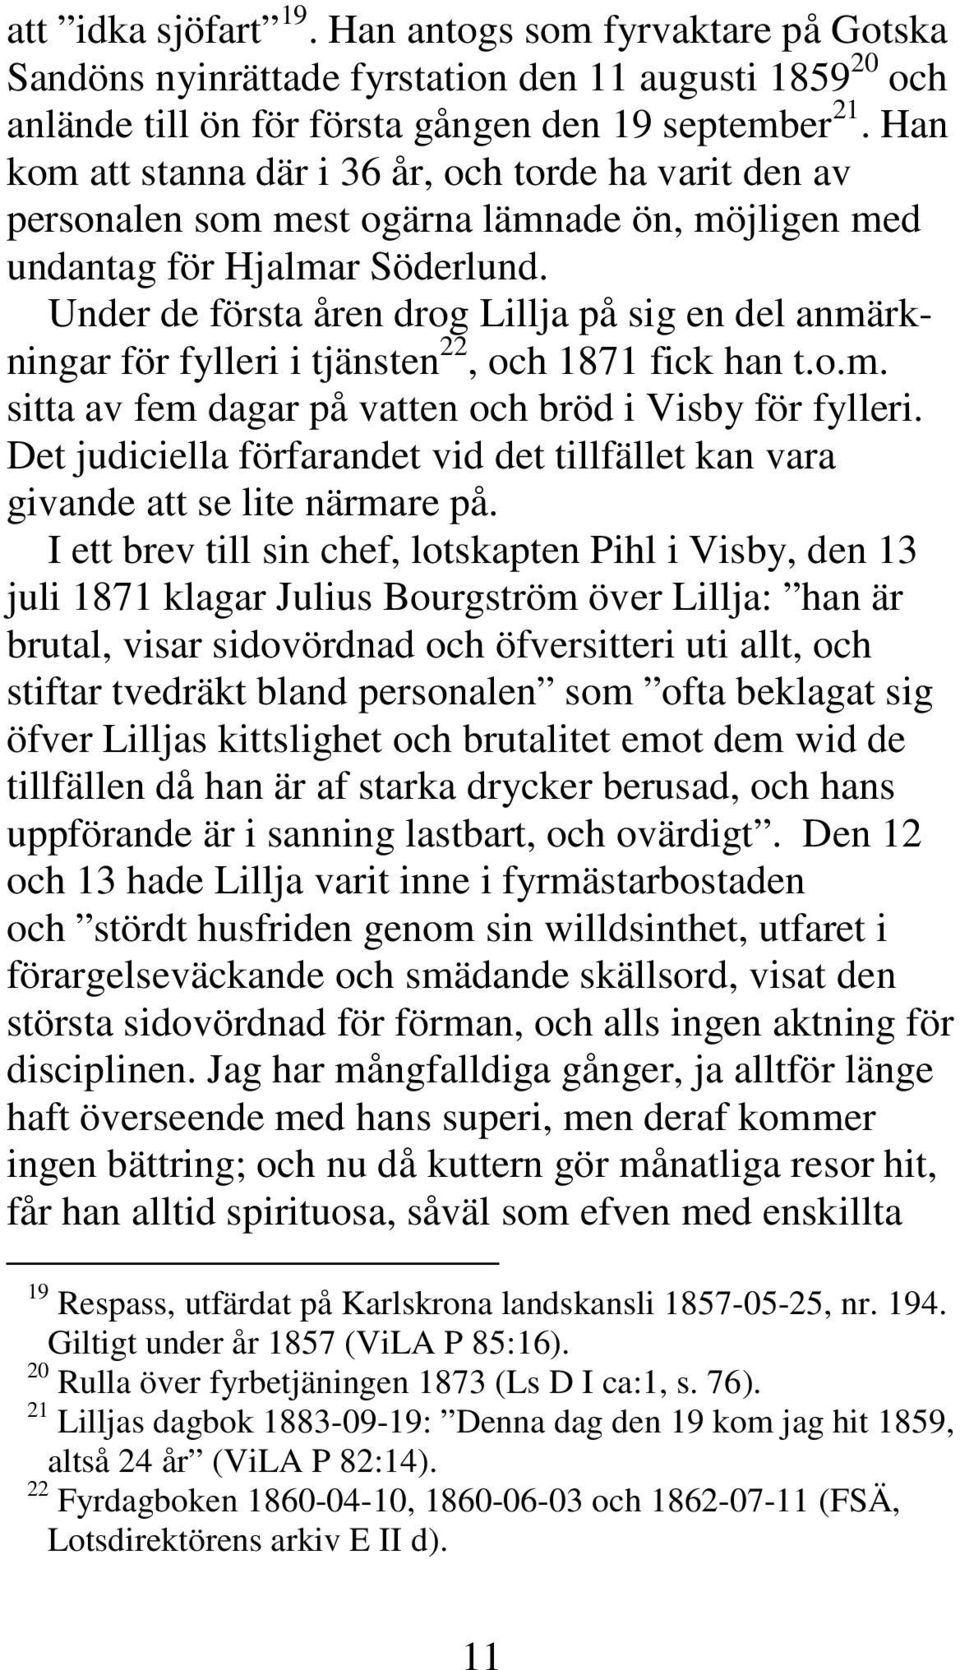 Under de första åren drog Lillja på sig en del anmärkningar för fylleri i tjänsten 22, och 1871 fick han t.o.m. sitta av fem dagar på vatten och bröd i Visby för fylleri.